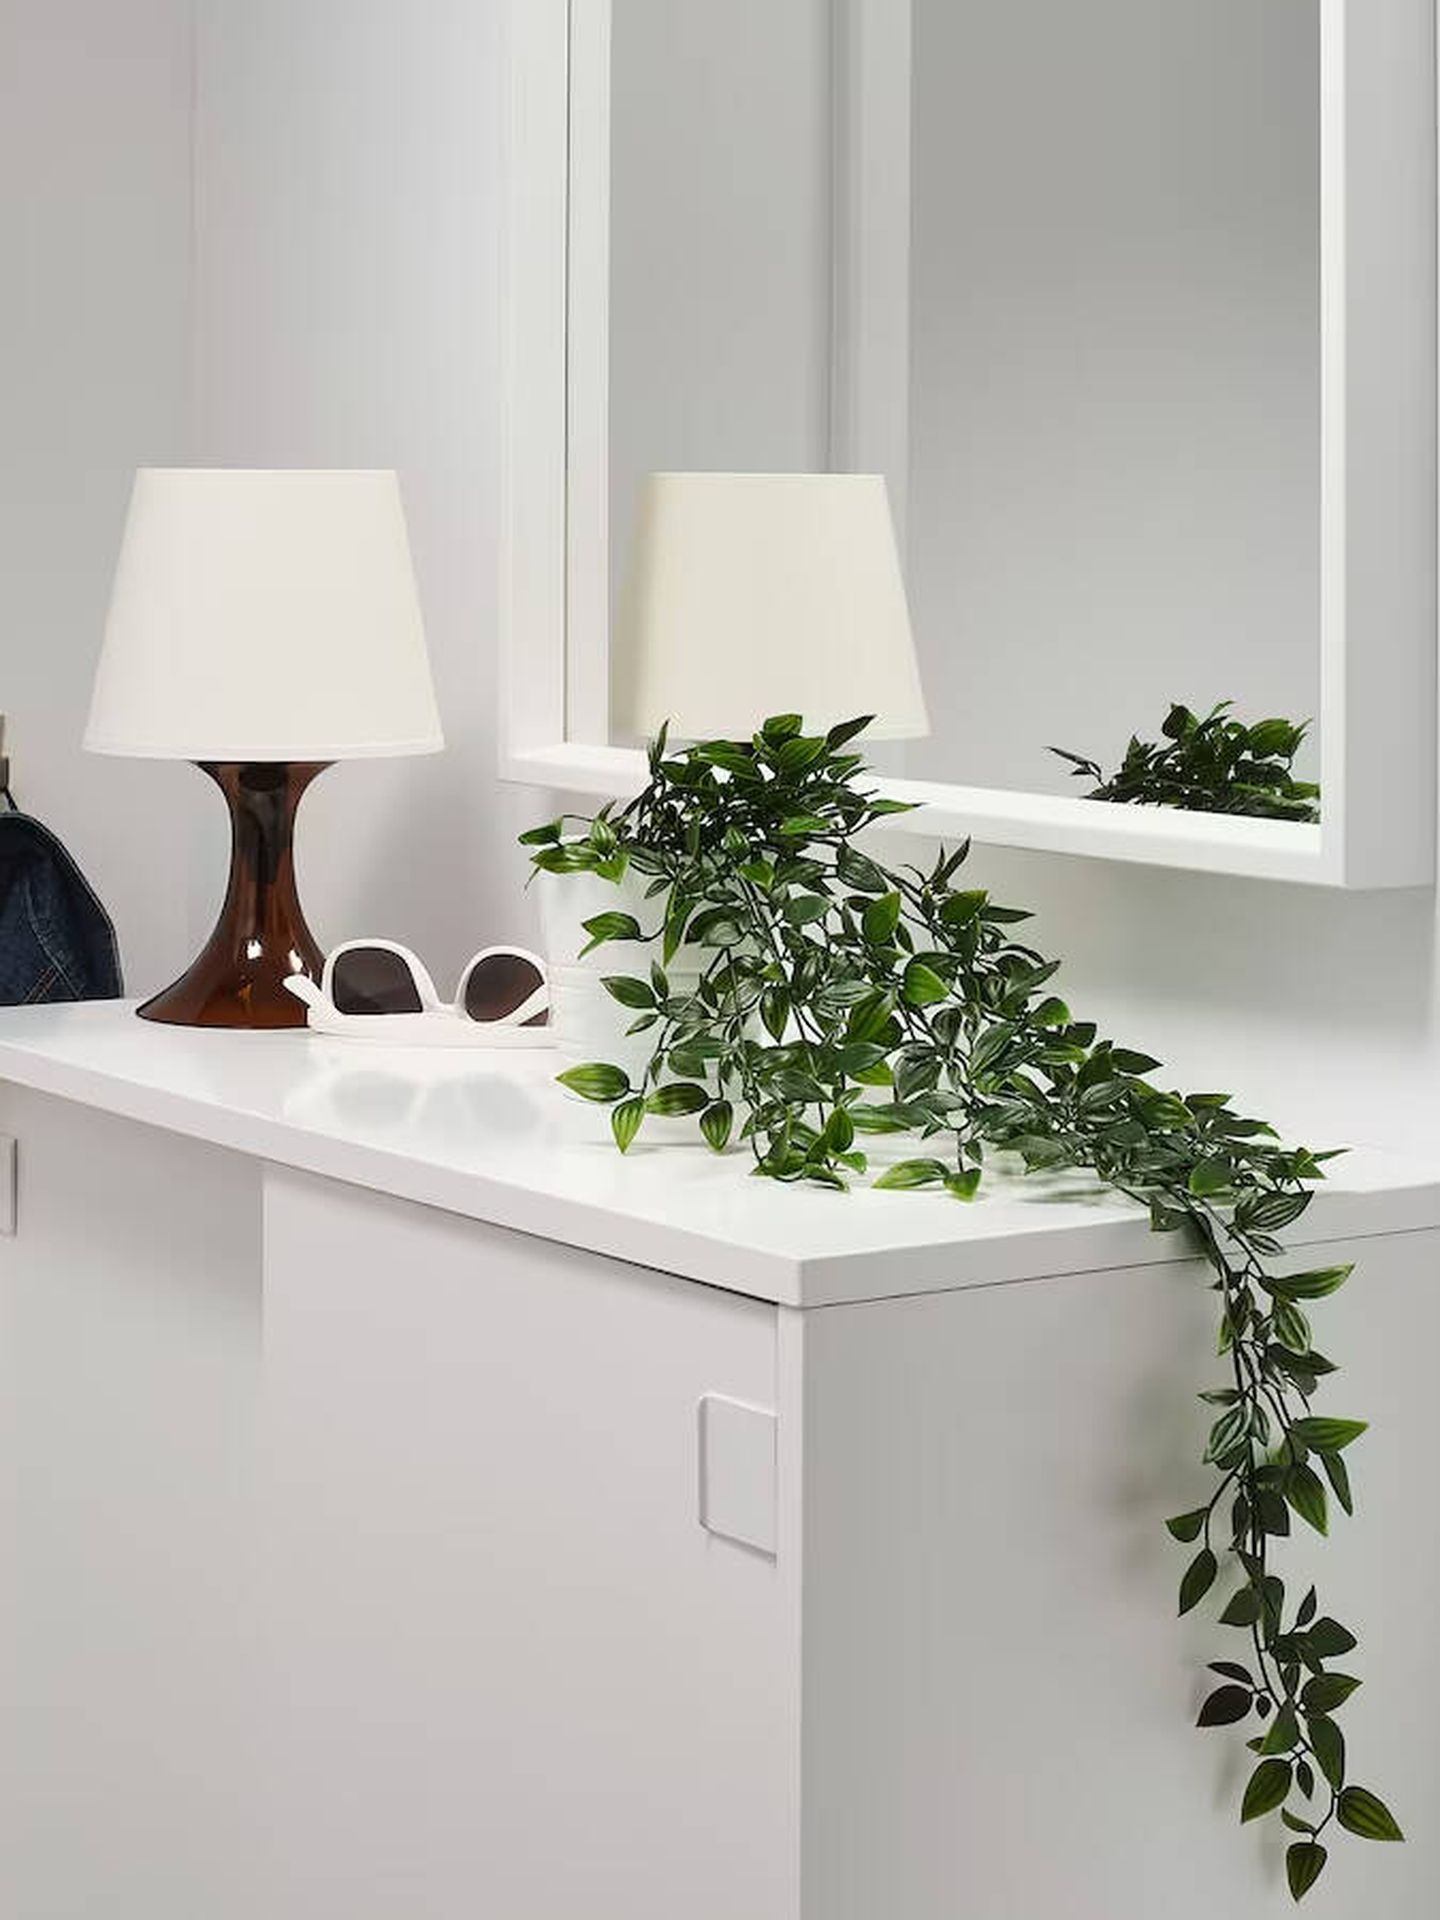 No desdeñes la opción de las plantas artificiales para zonas con poca luz. (Cortesía/Ikea)